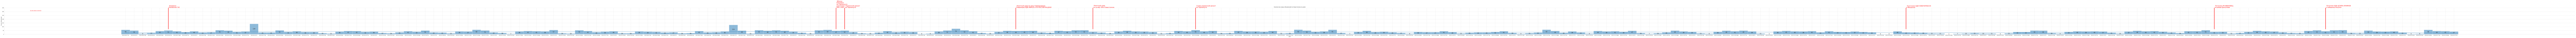 Гистограмма, показывающая количество предложений недвижимости Севастополя по дням c 2023-06-01 по сегодняшний день